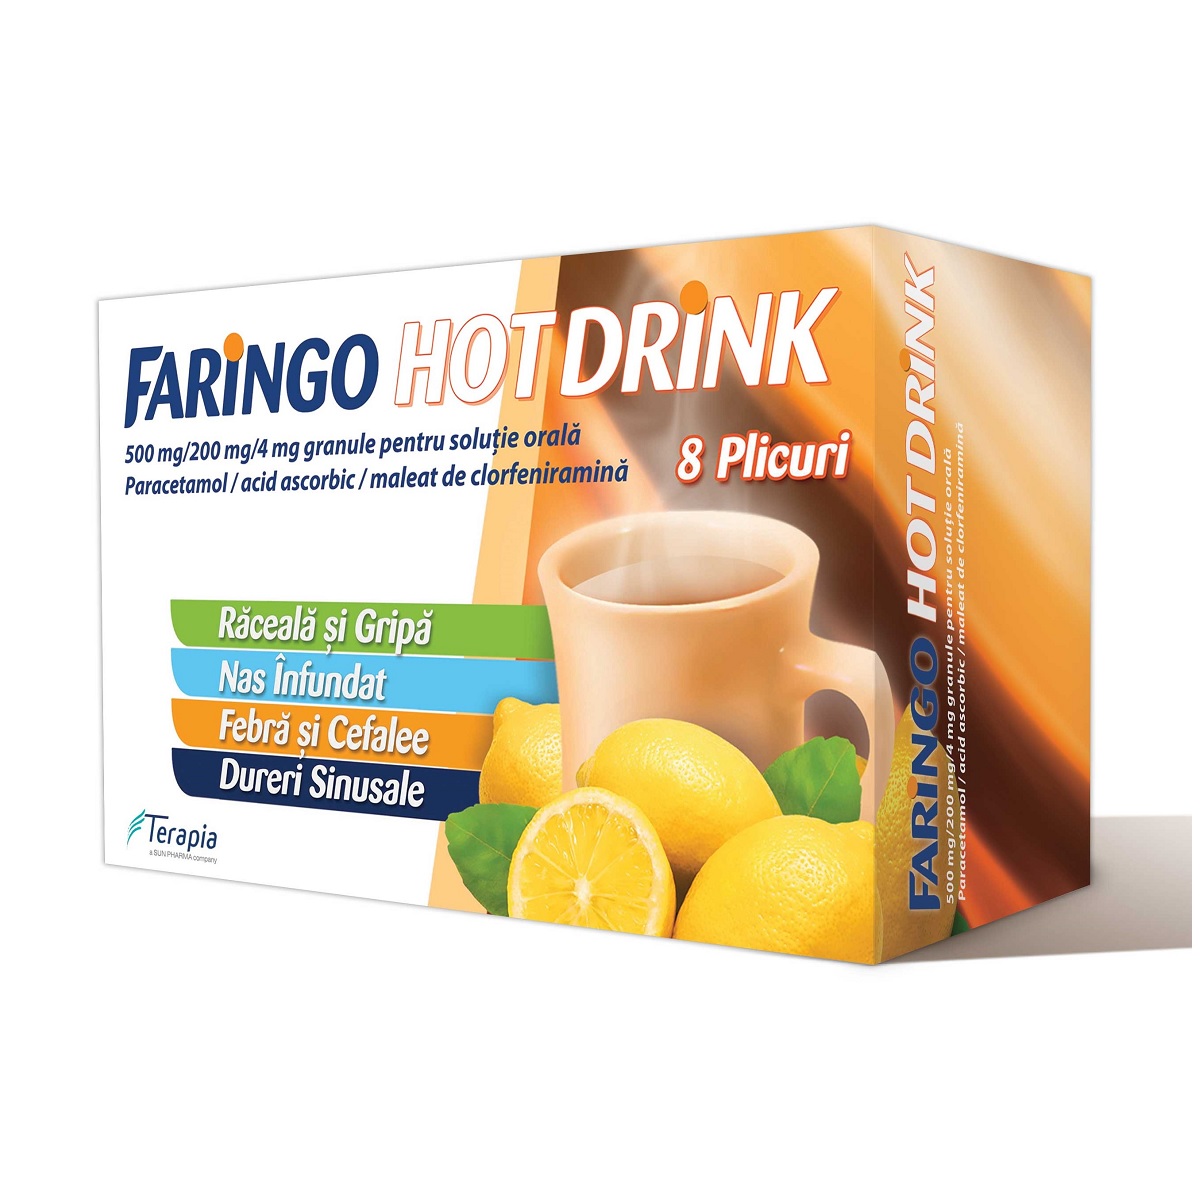 FARINGO HOT DRINK 500 mg/200 mg/4 mg x 8